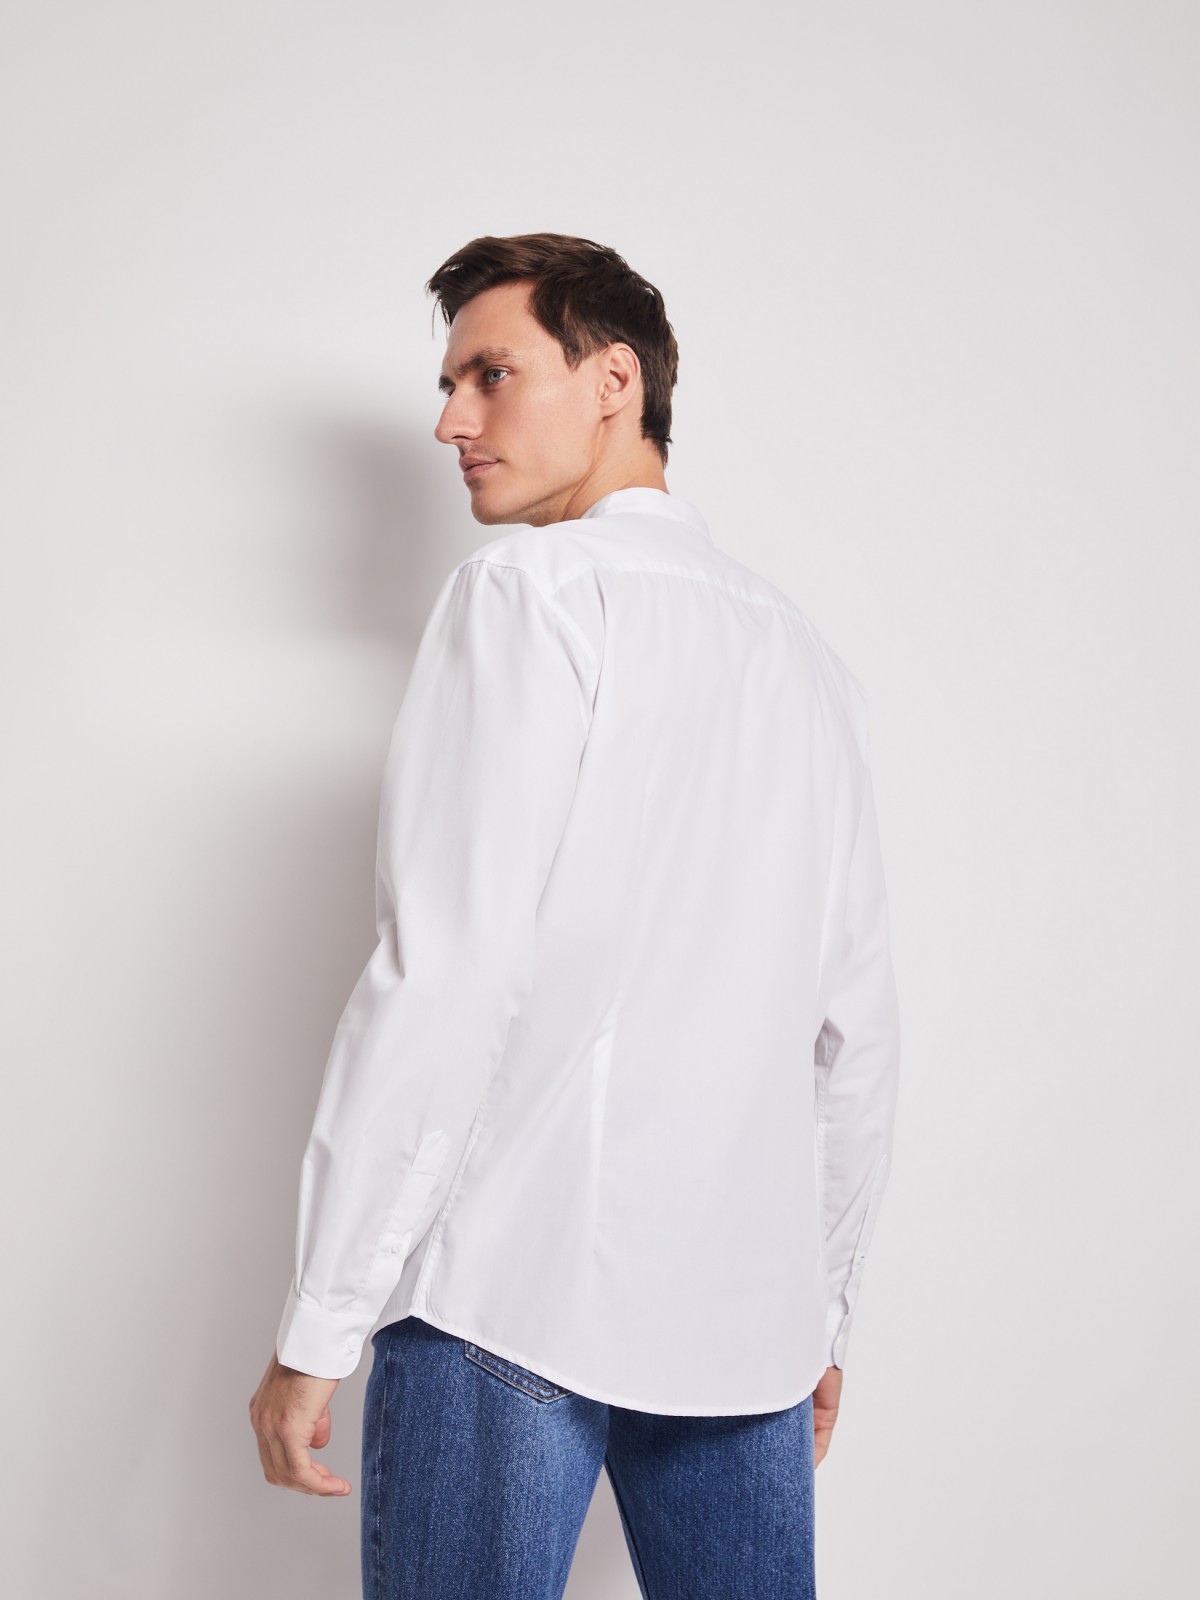 Рубашка с воротником-стойкой zolla 212112159012, цвет белый, размер S - фото 6